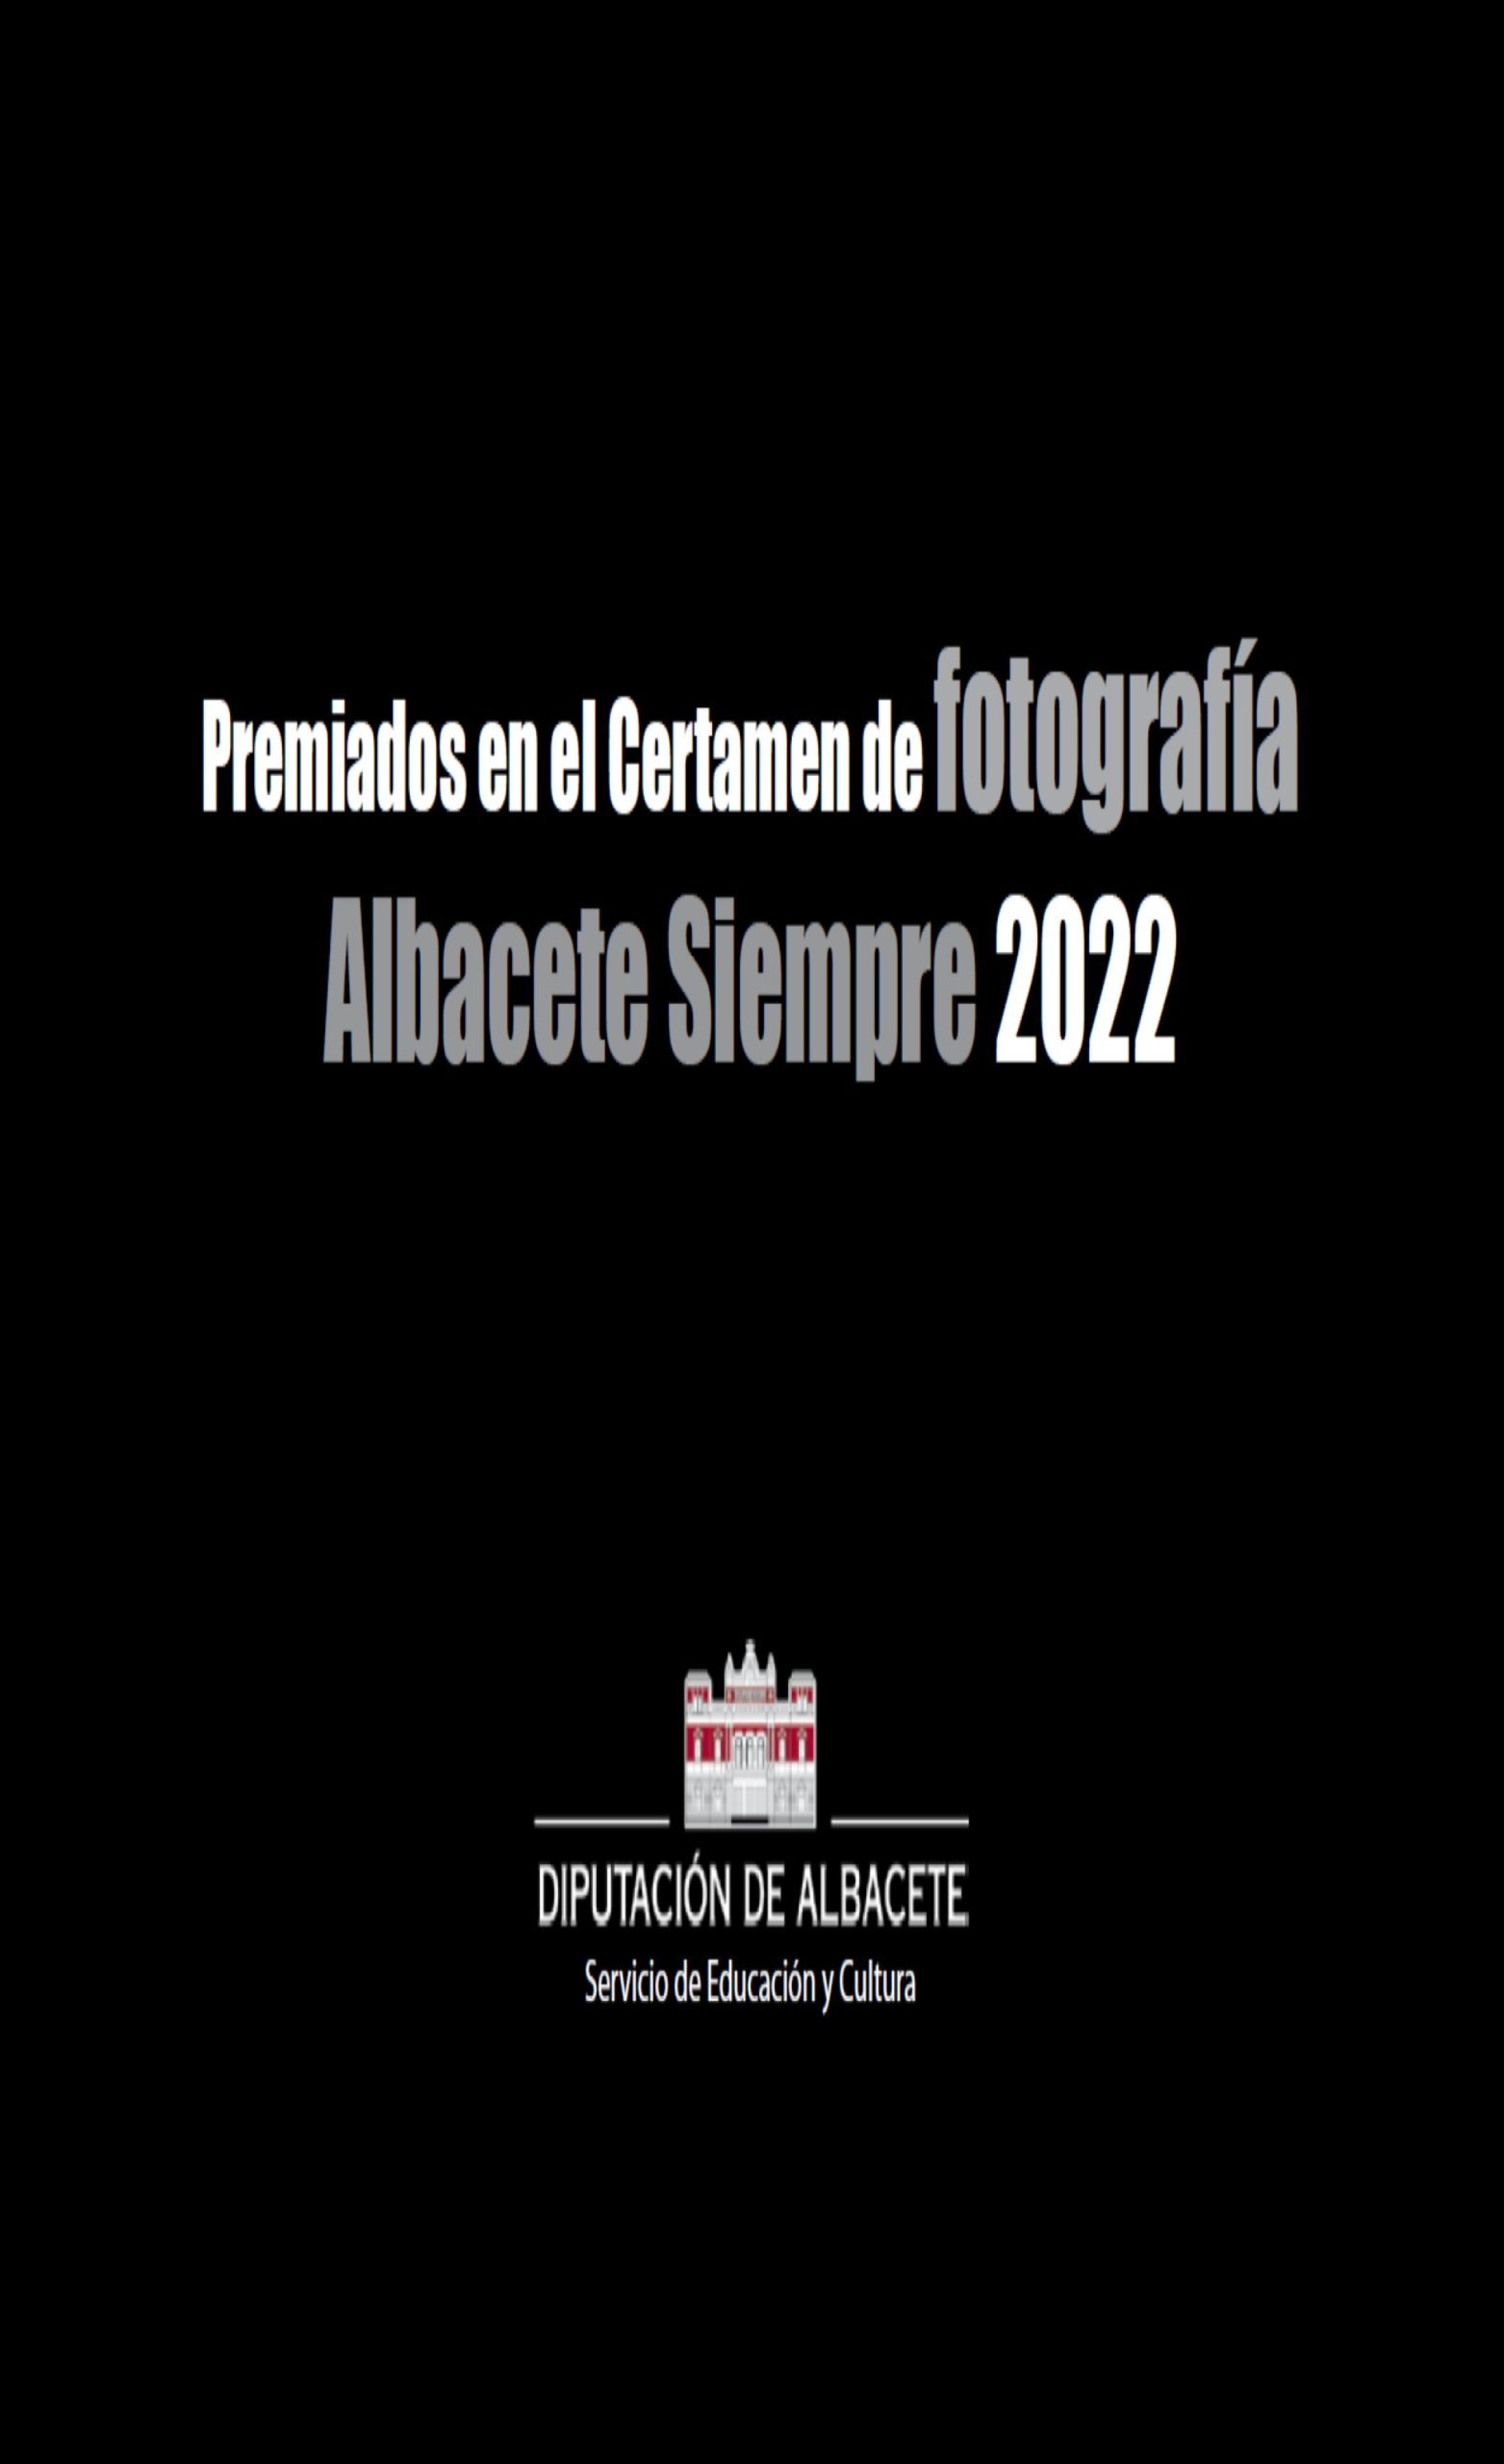 portada folleto premiados albacete siempre 2022